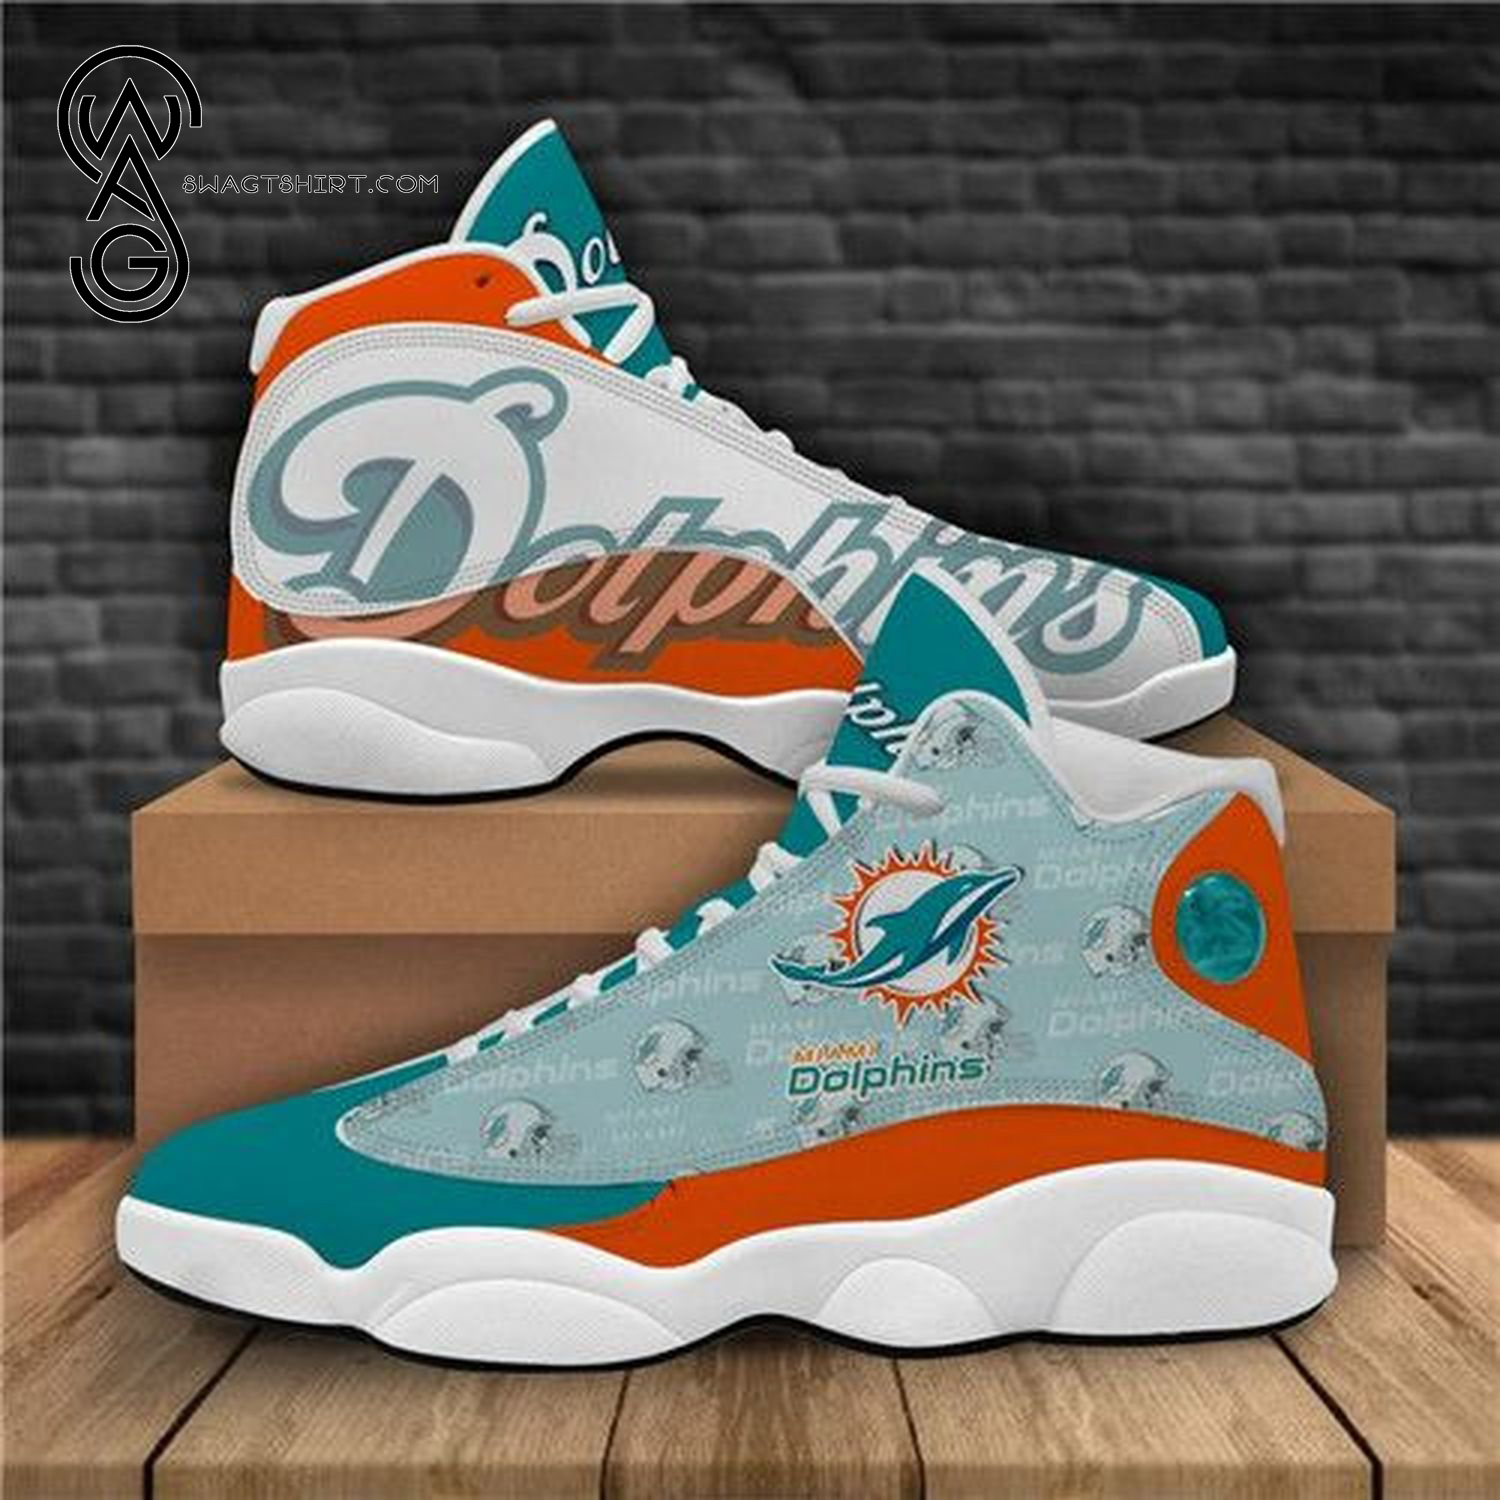 Miami Dolphins Football Team Air Jordan 13 Shoes